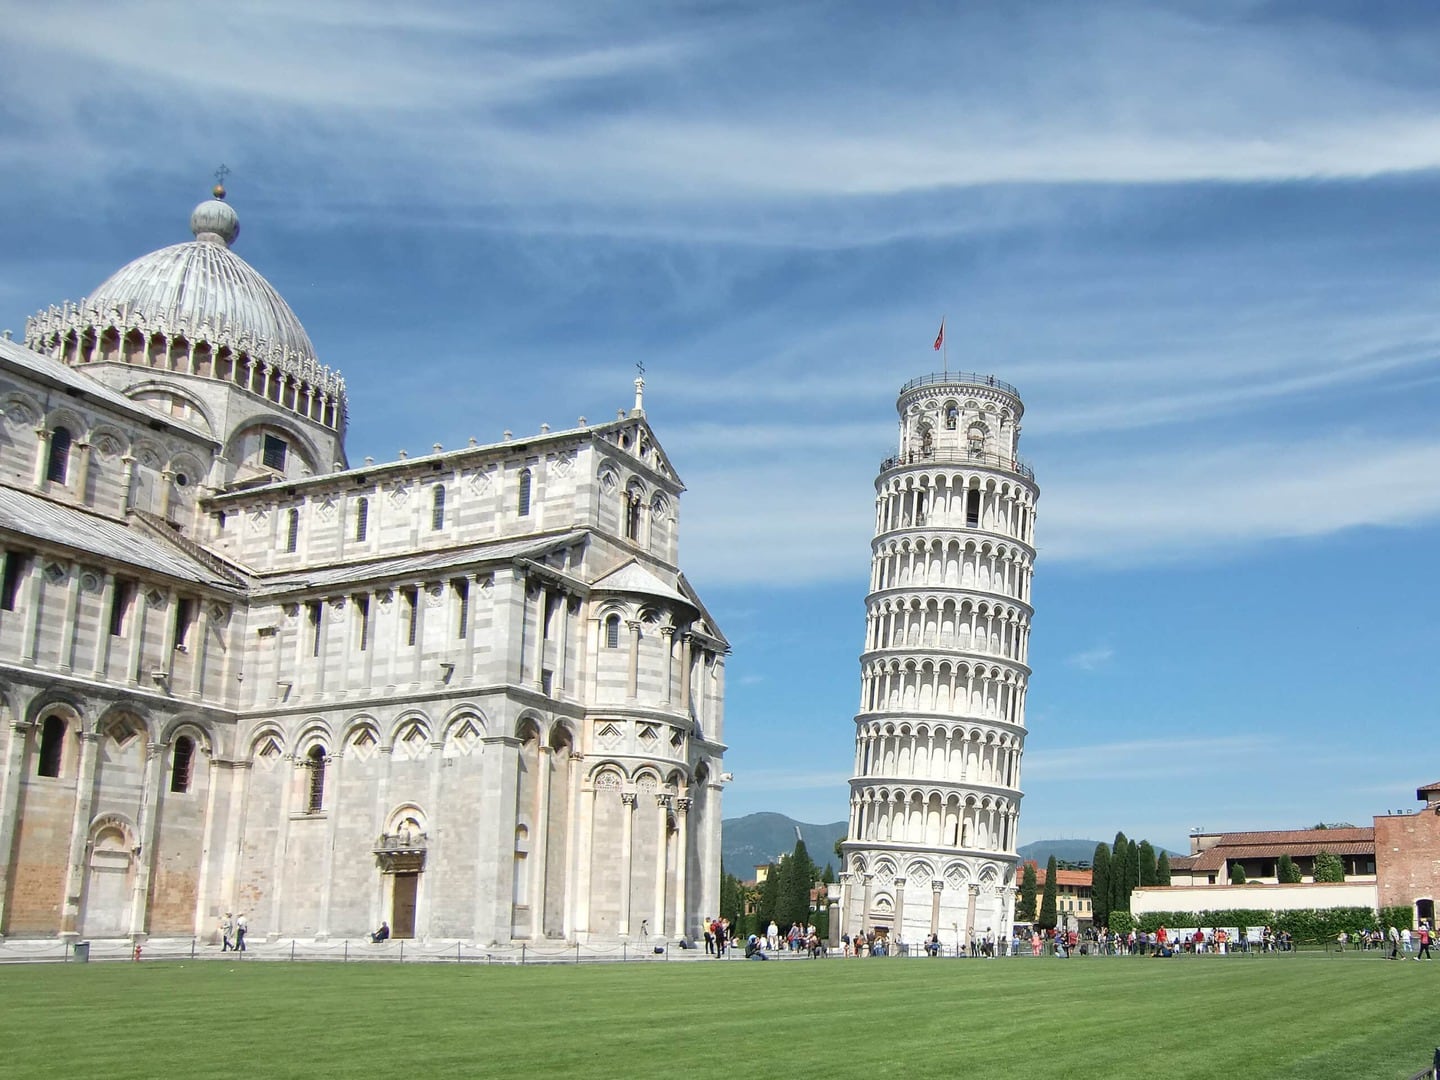 Radreise Italien Alpen-Rom, Piazza dei Miracoli (Platz der Wunder) mit dem Dom Santa Maria Assunta und seinem Glockenturm (Capanile), dem schiefen Turm von Pisa